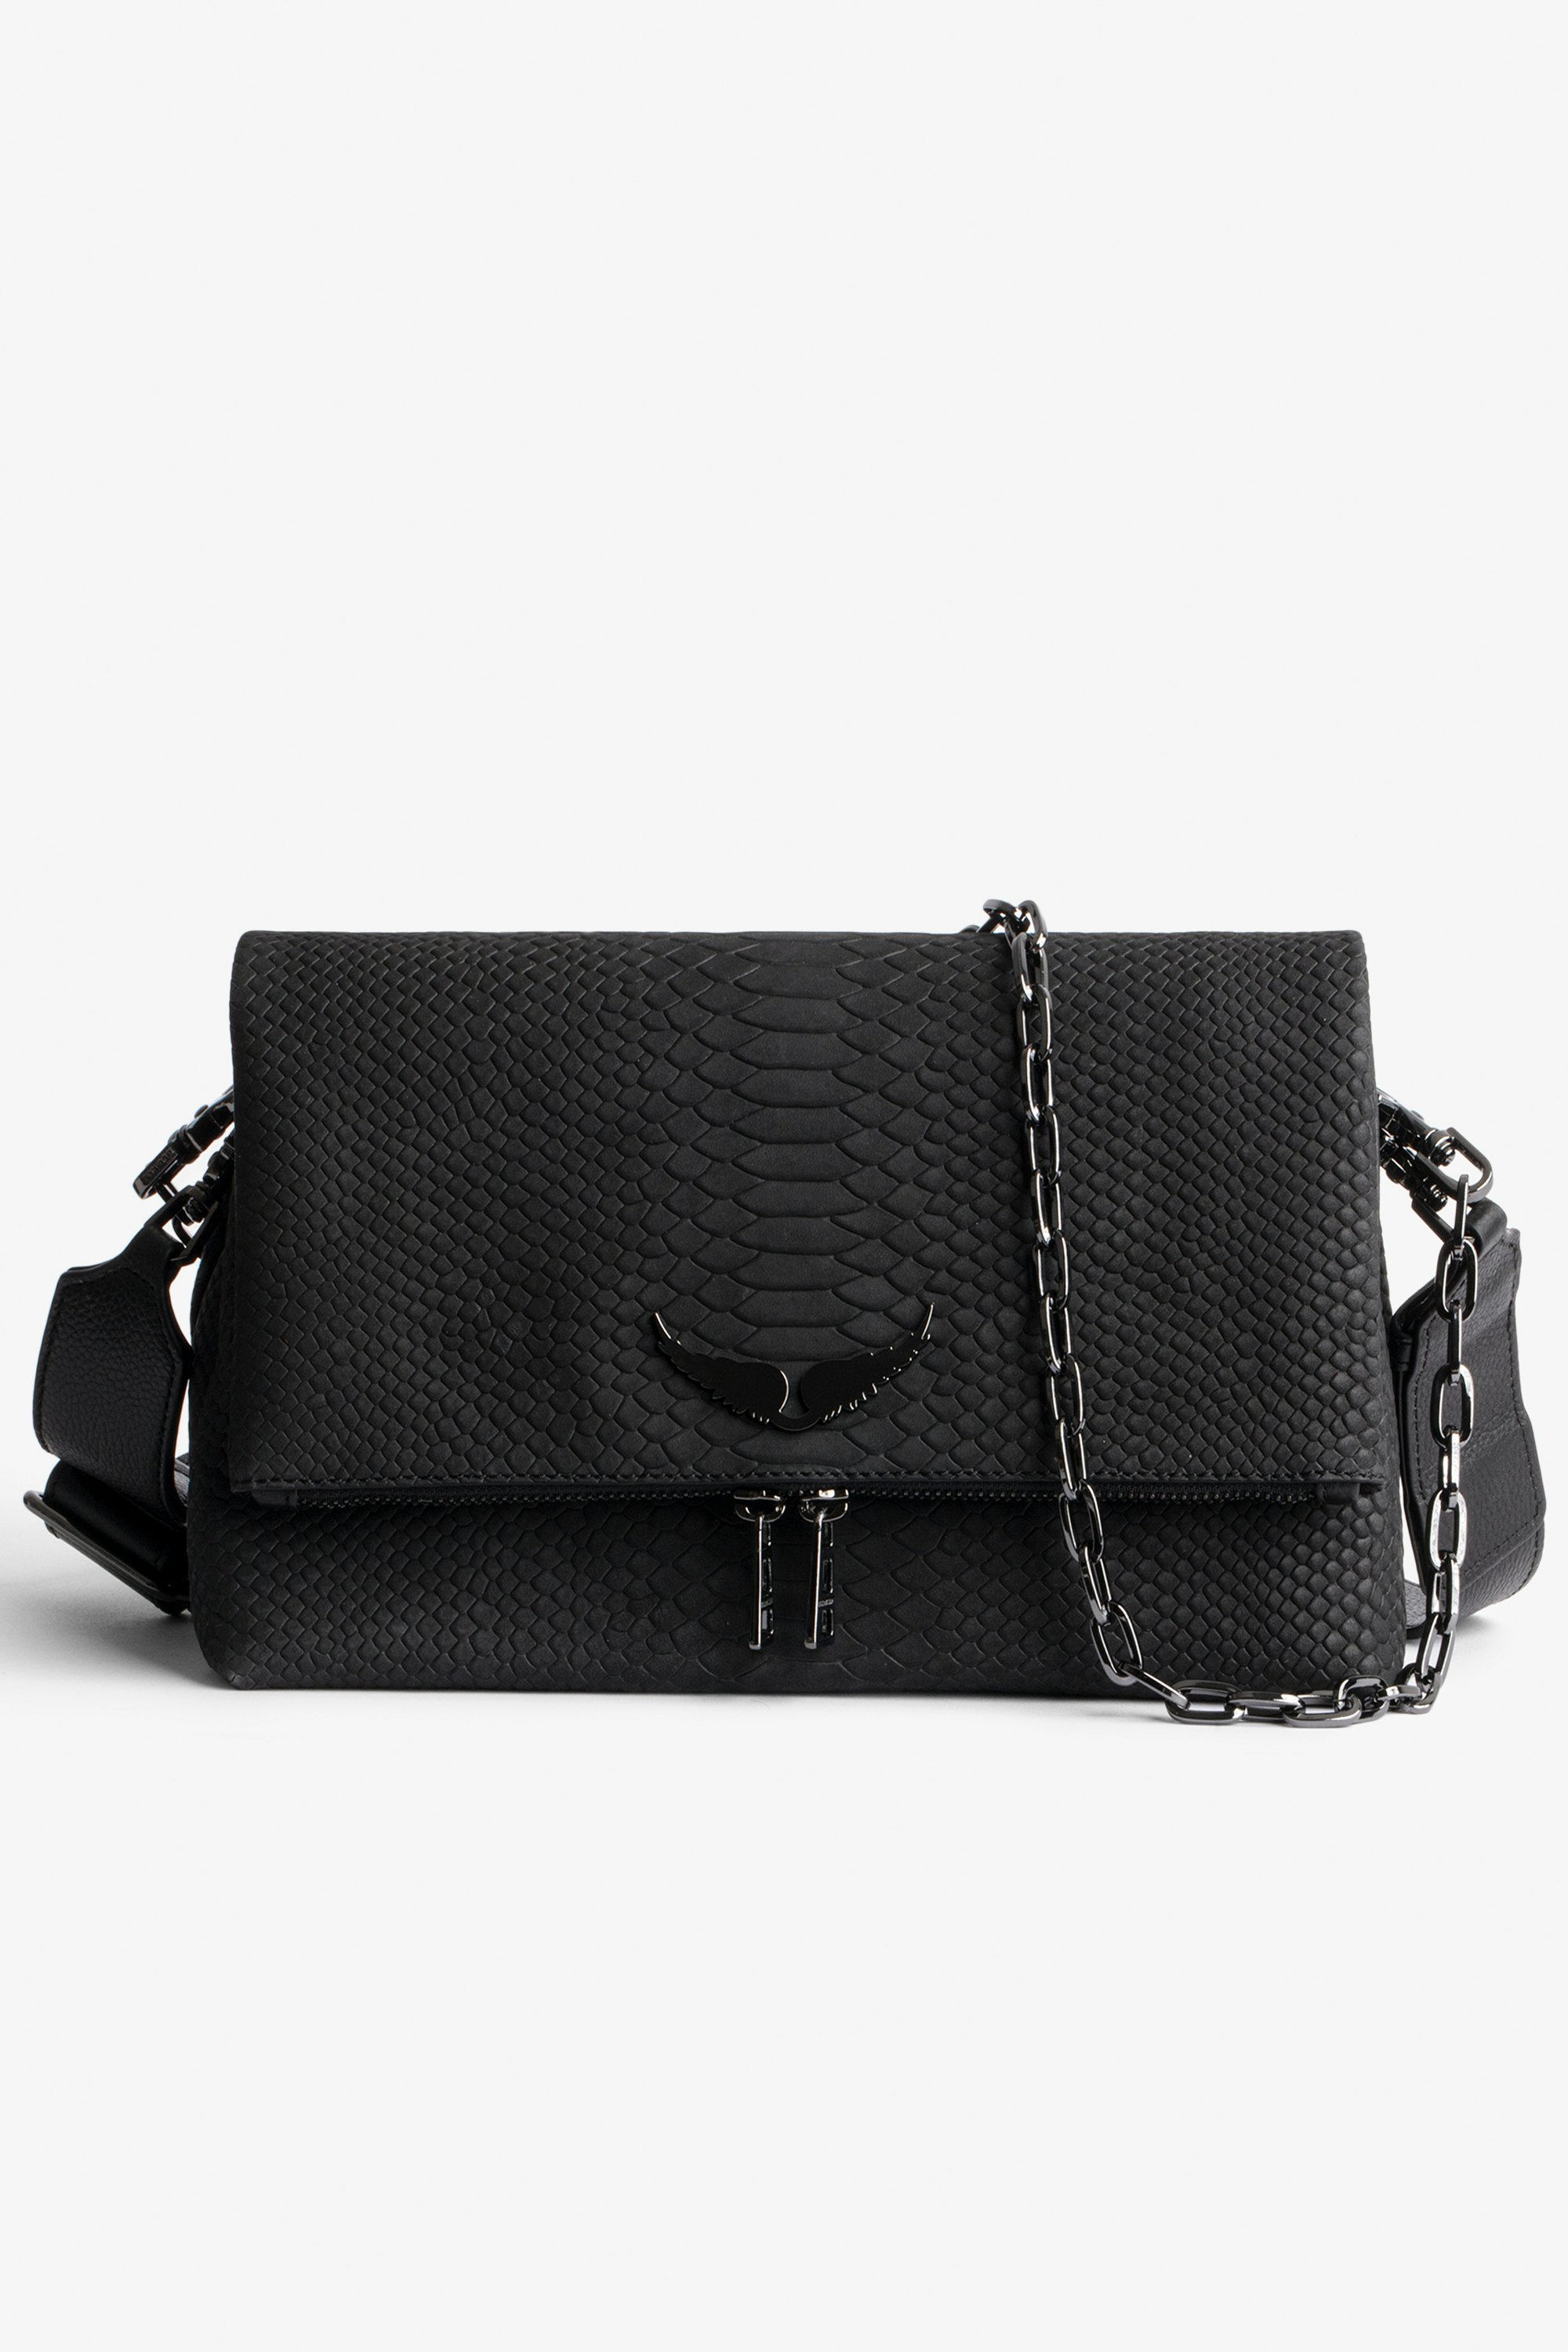 Tasche Rocky Damen-Handtasche aus schwarzem Leder in Python-Optik mit Ketten-Schulterriemen